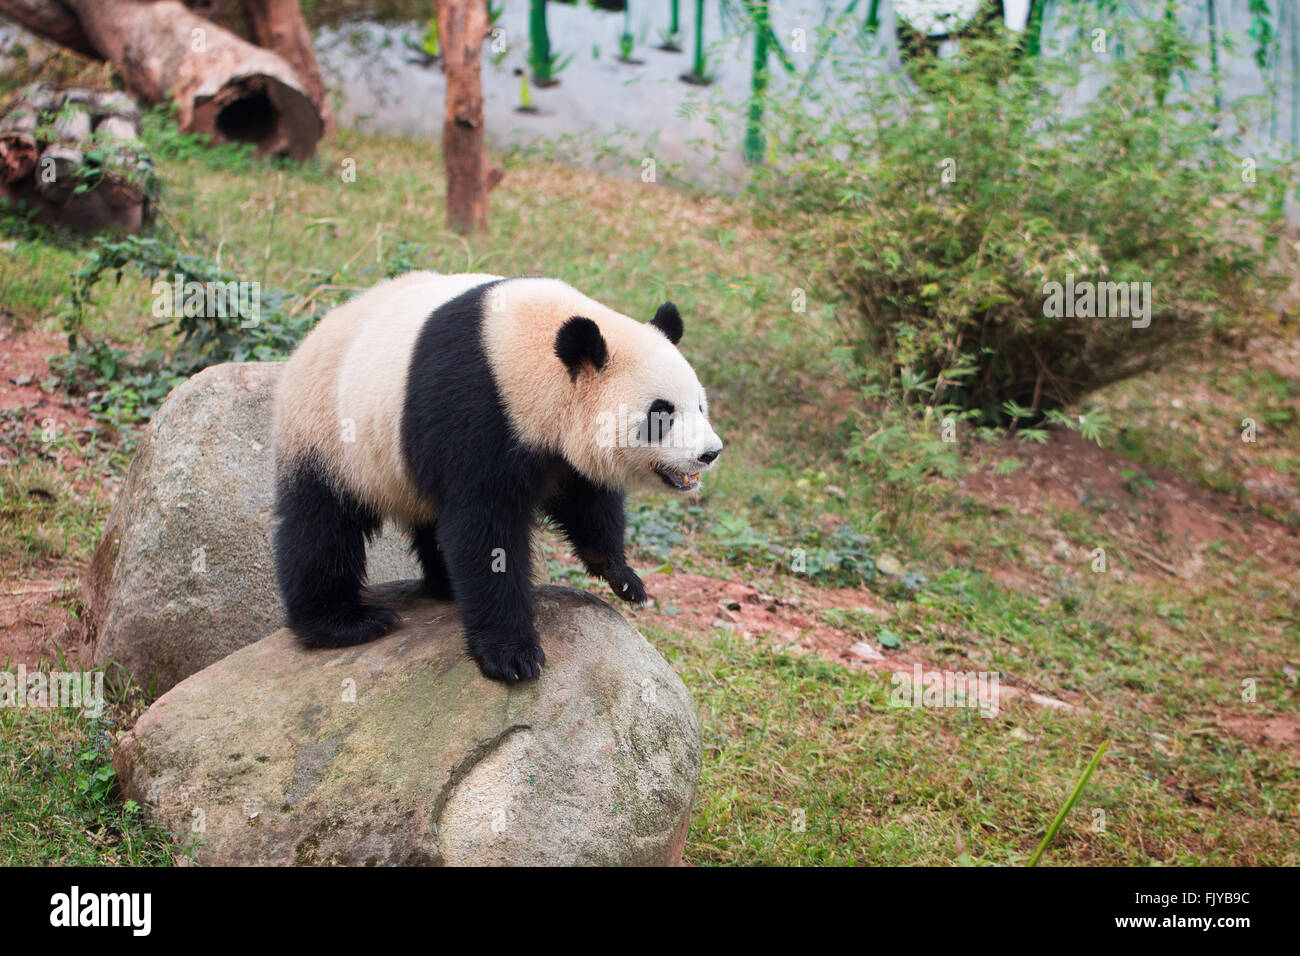 Panda in zoo Stock Photo